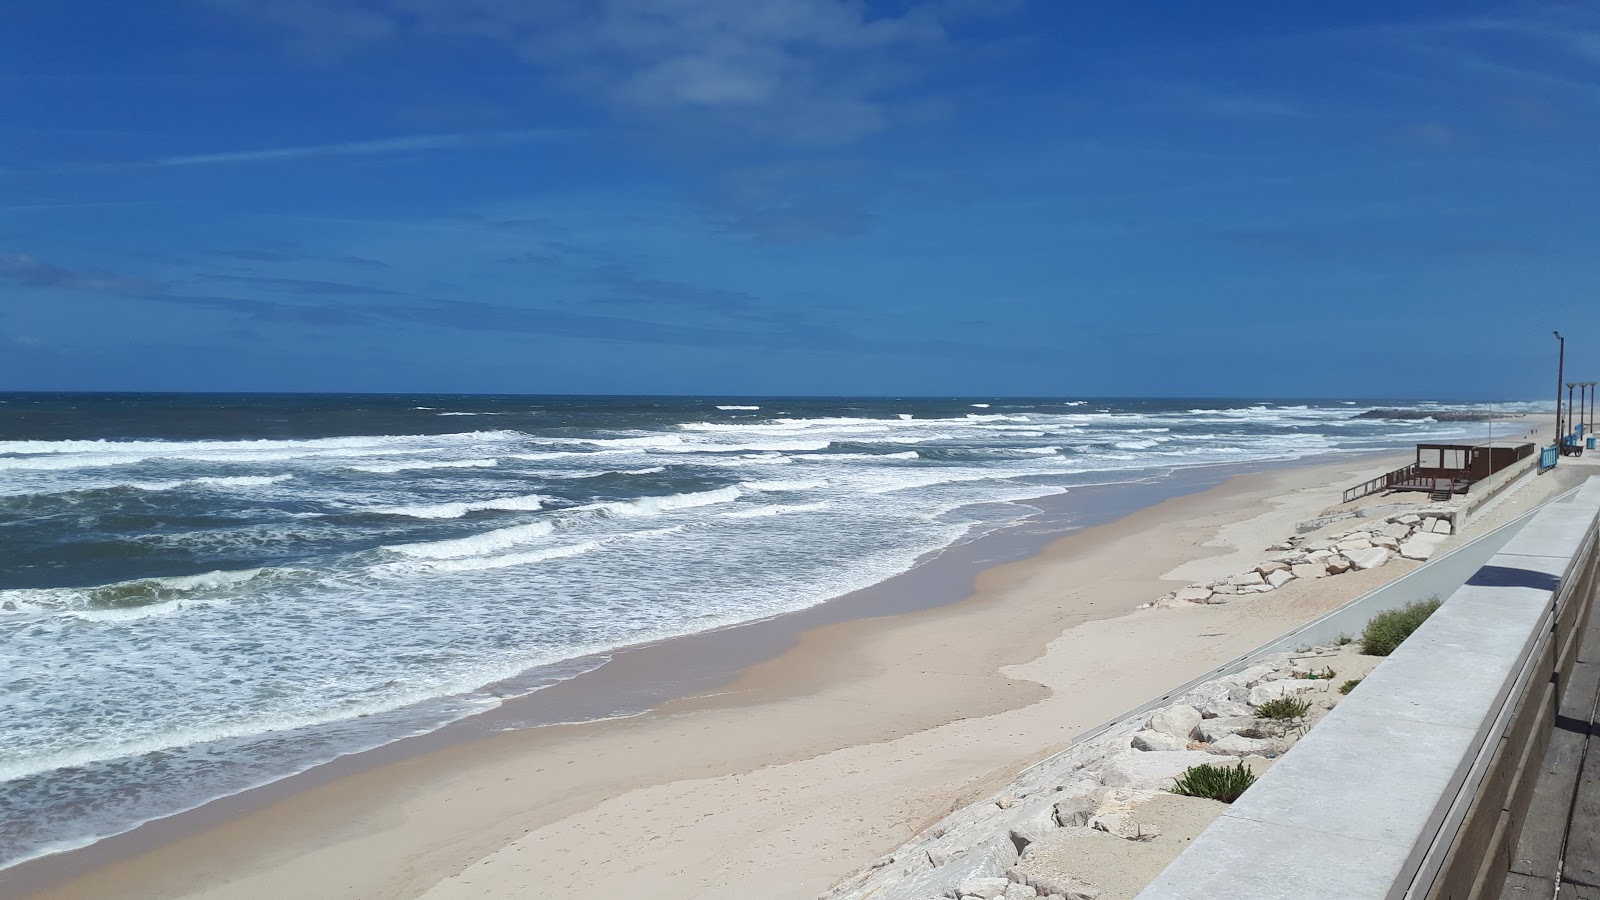 Foto af Praia da Vieira - populært sted blandt afslapningskendere